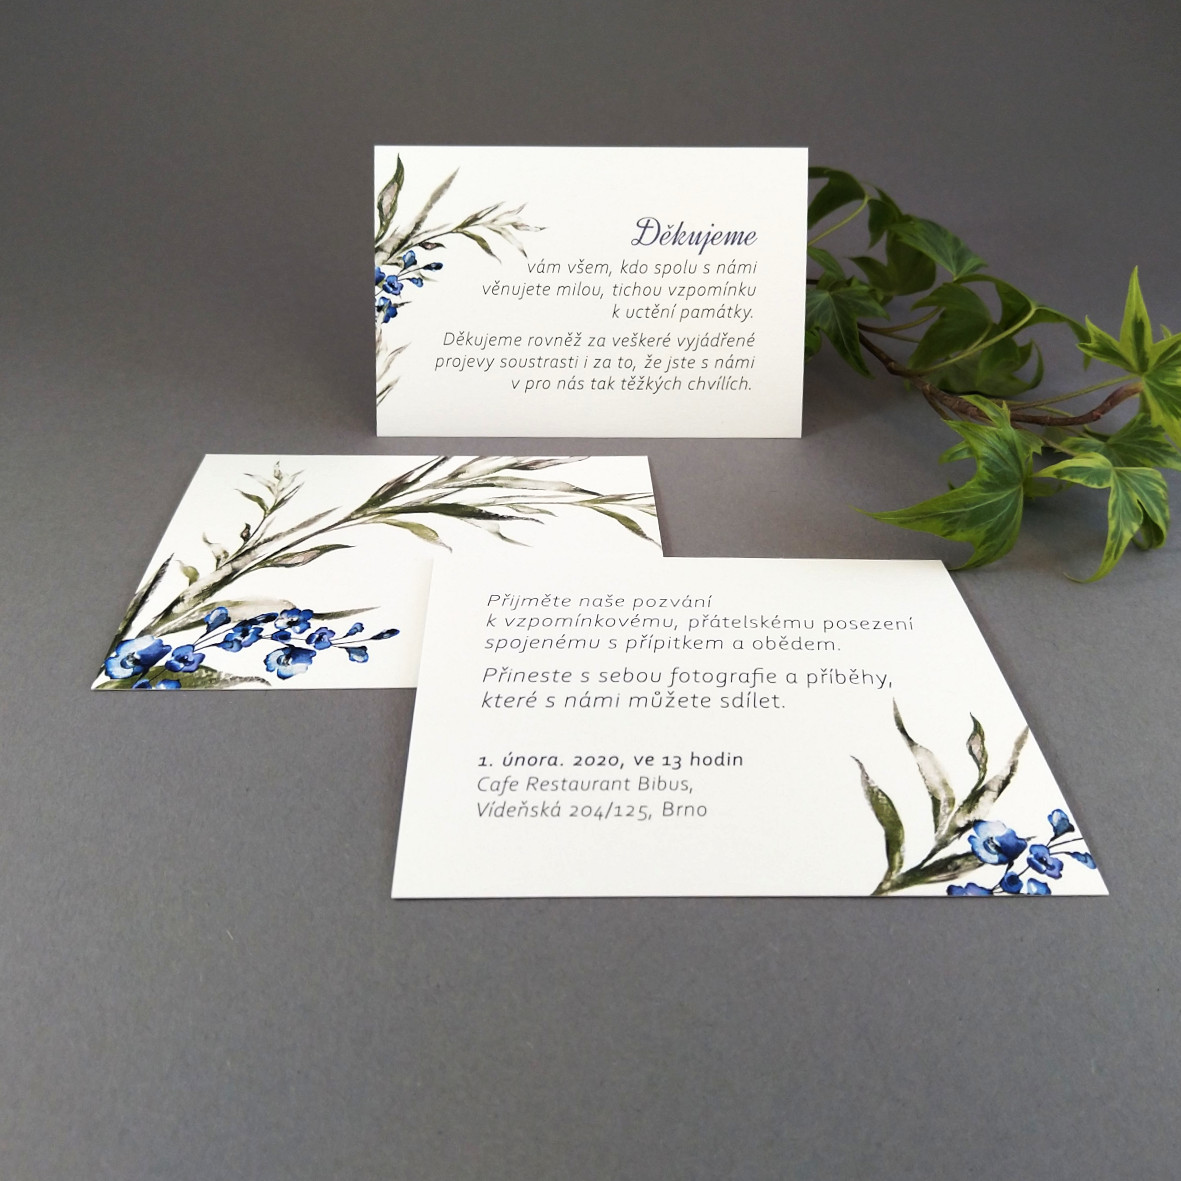 Pozvánka, informační karta – s motivem ratolesti a drobných modrých květů, formát 100 × 70 mm, oboustranná